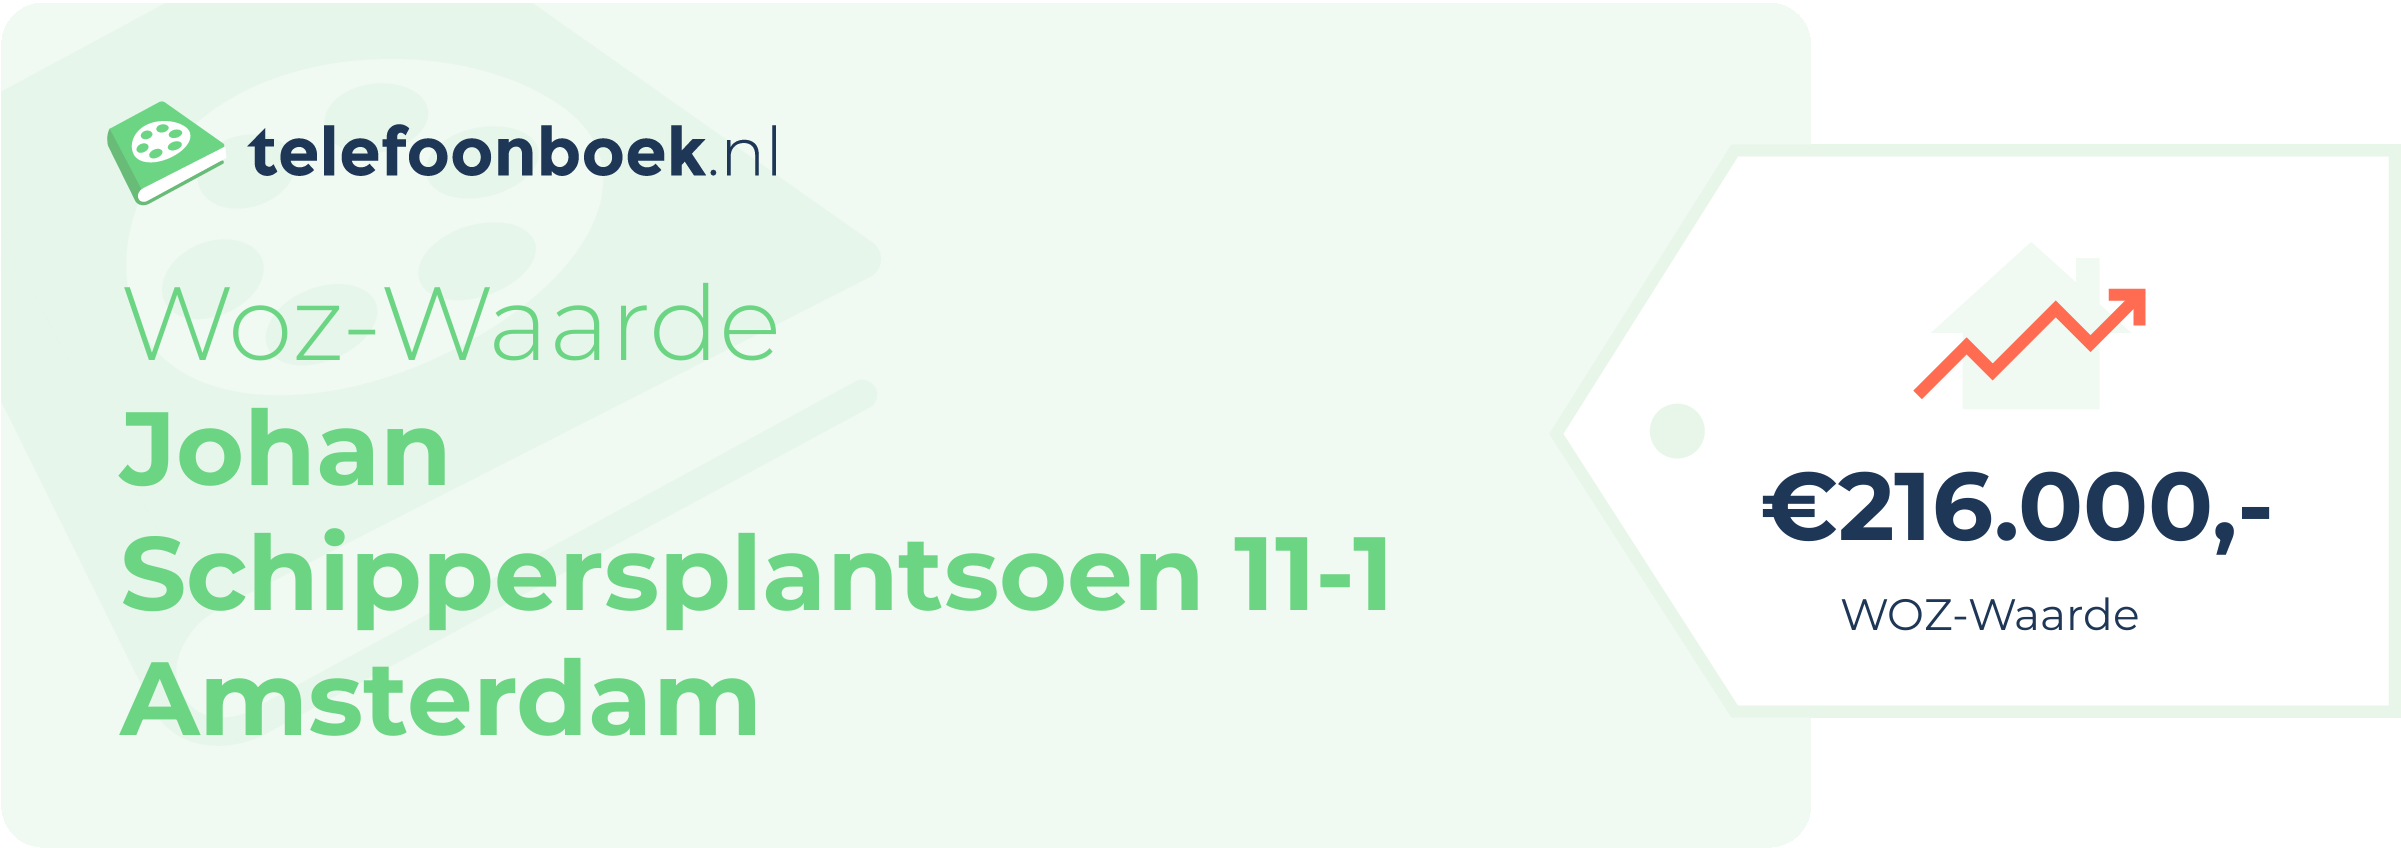 WOZ-waarde Johan Schippersplantsoen 11-1 Amsterdam